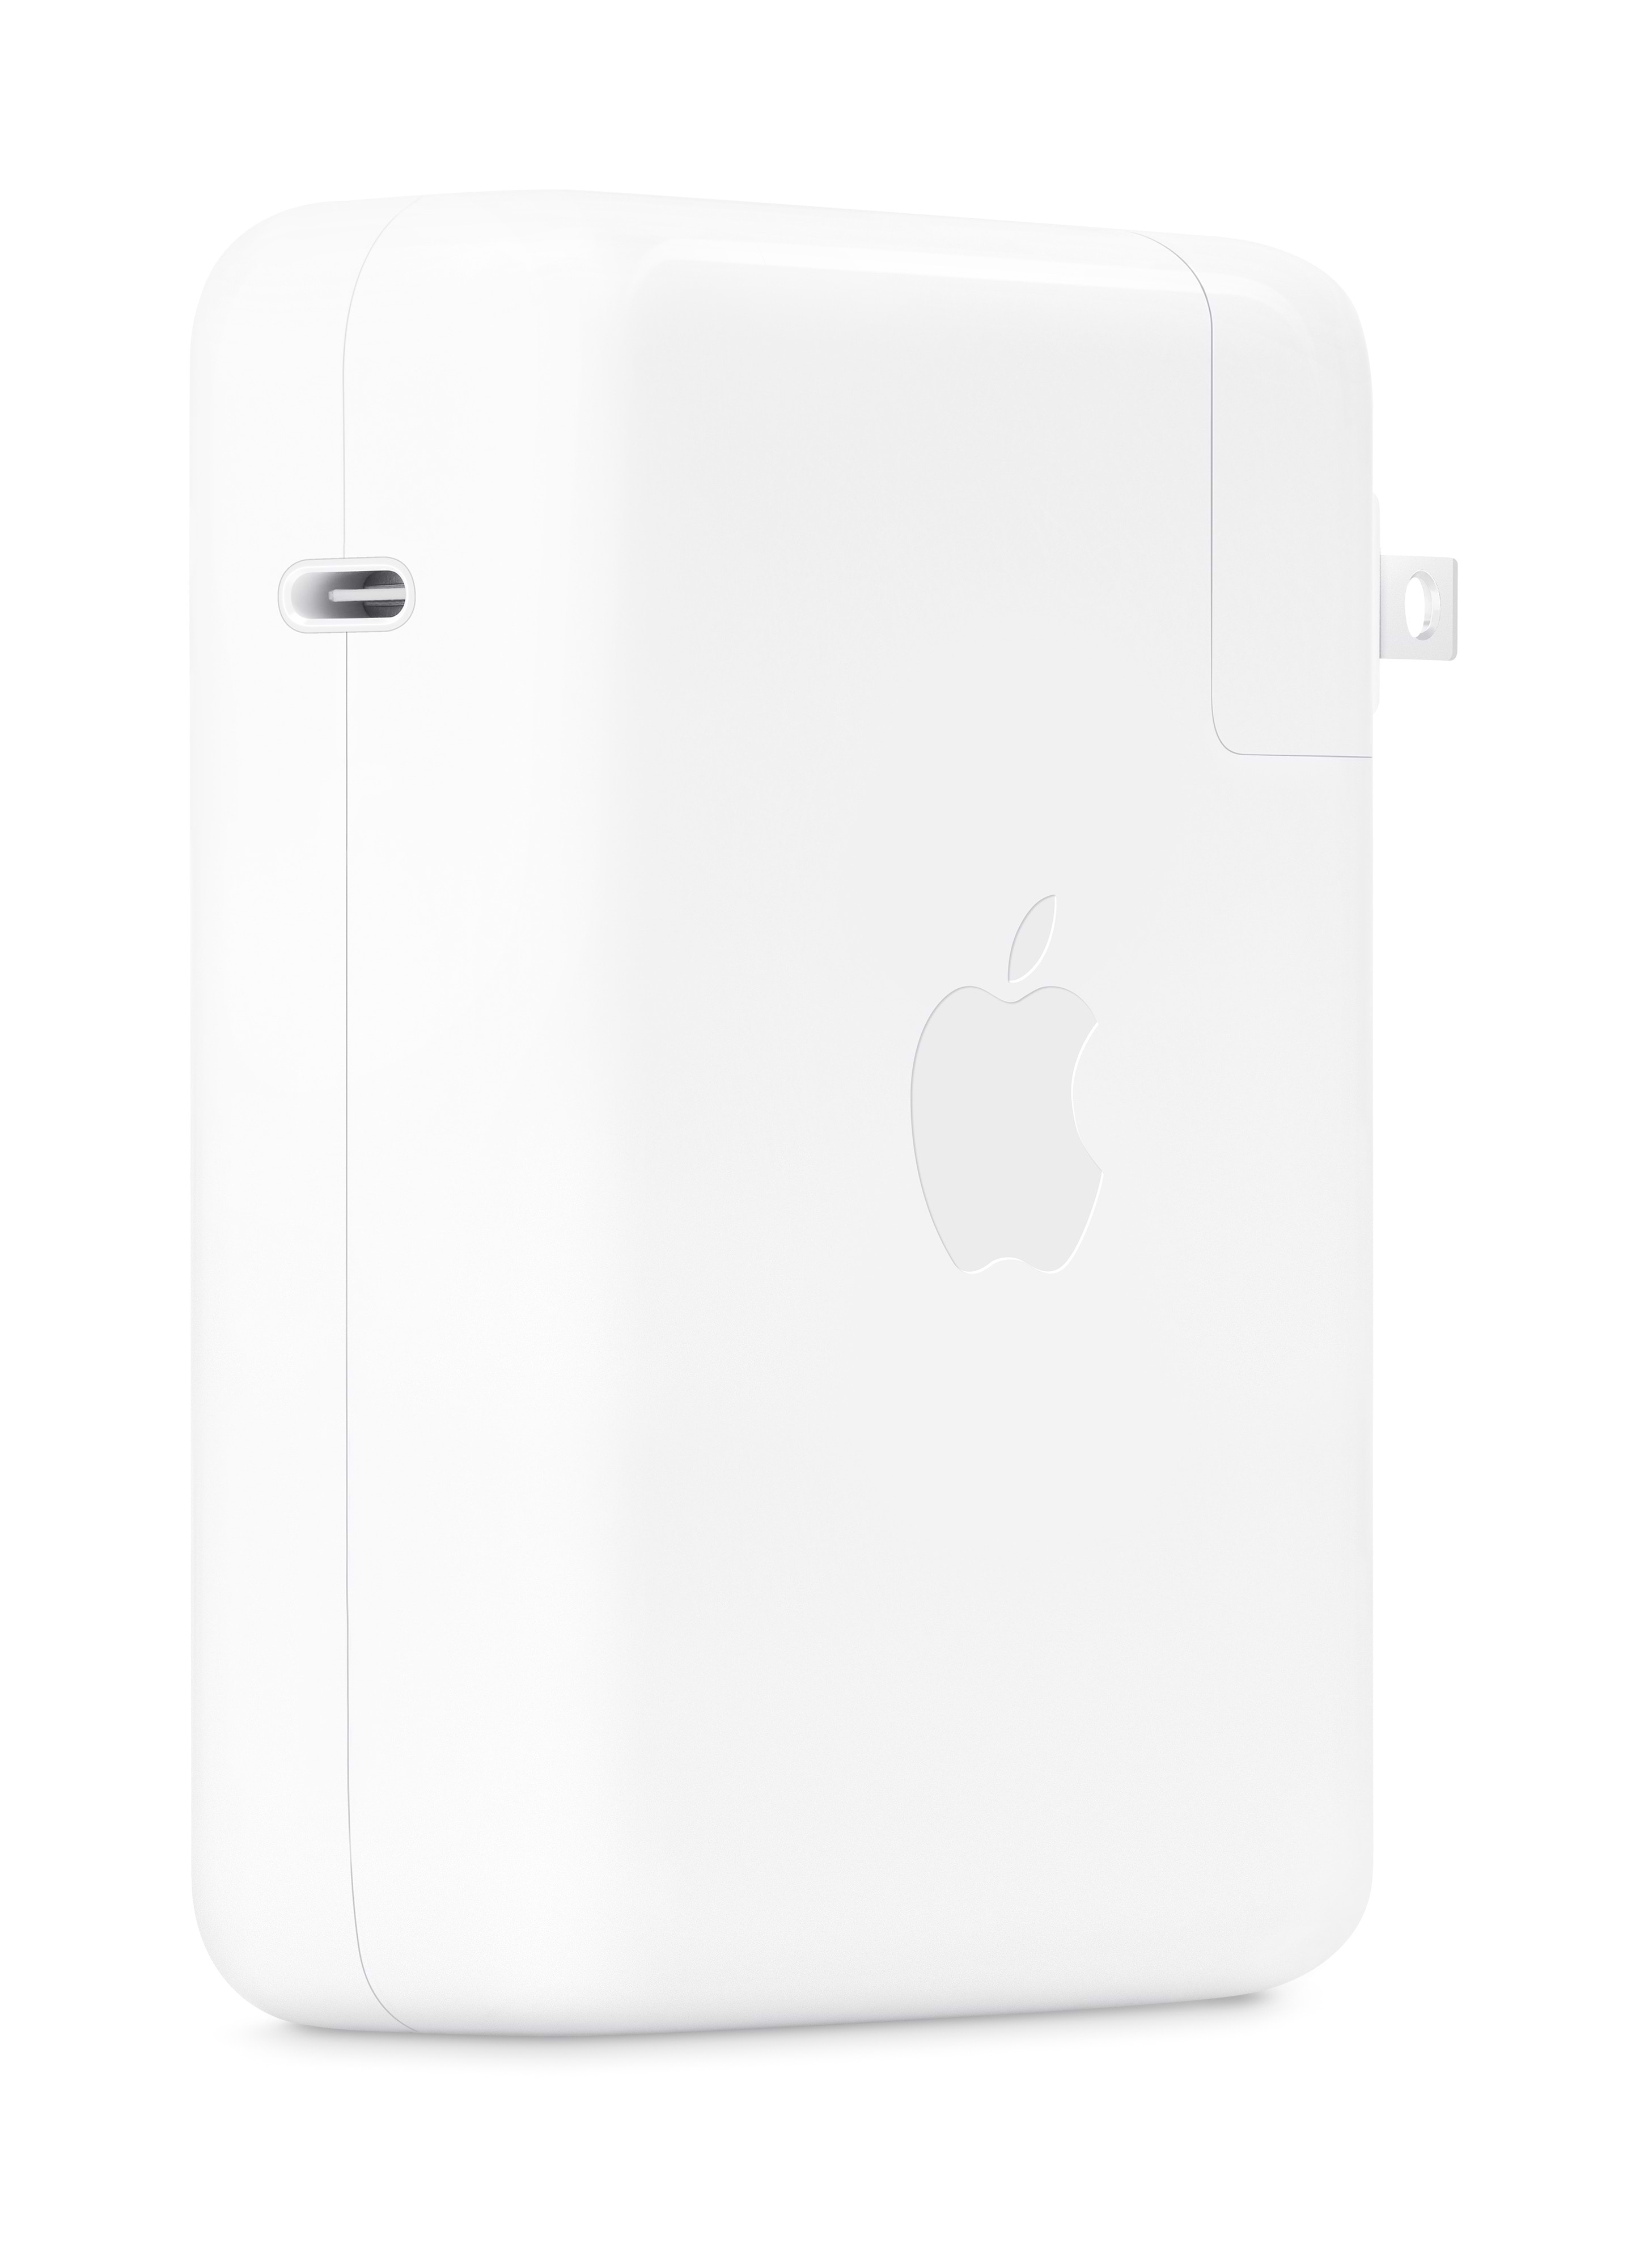 מטען למחשב נייד - Apple 140W USB-C Power Adapter - צבע לבן שנה אחריות ע"י היבואן הרשמי